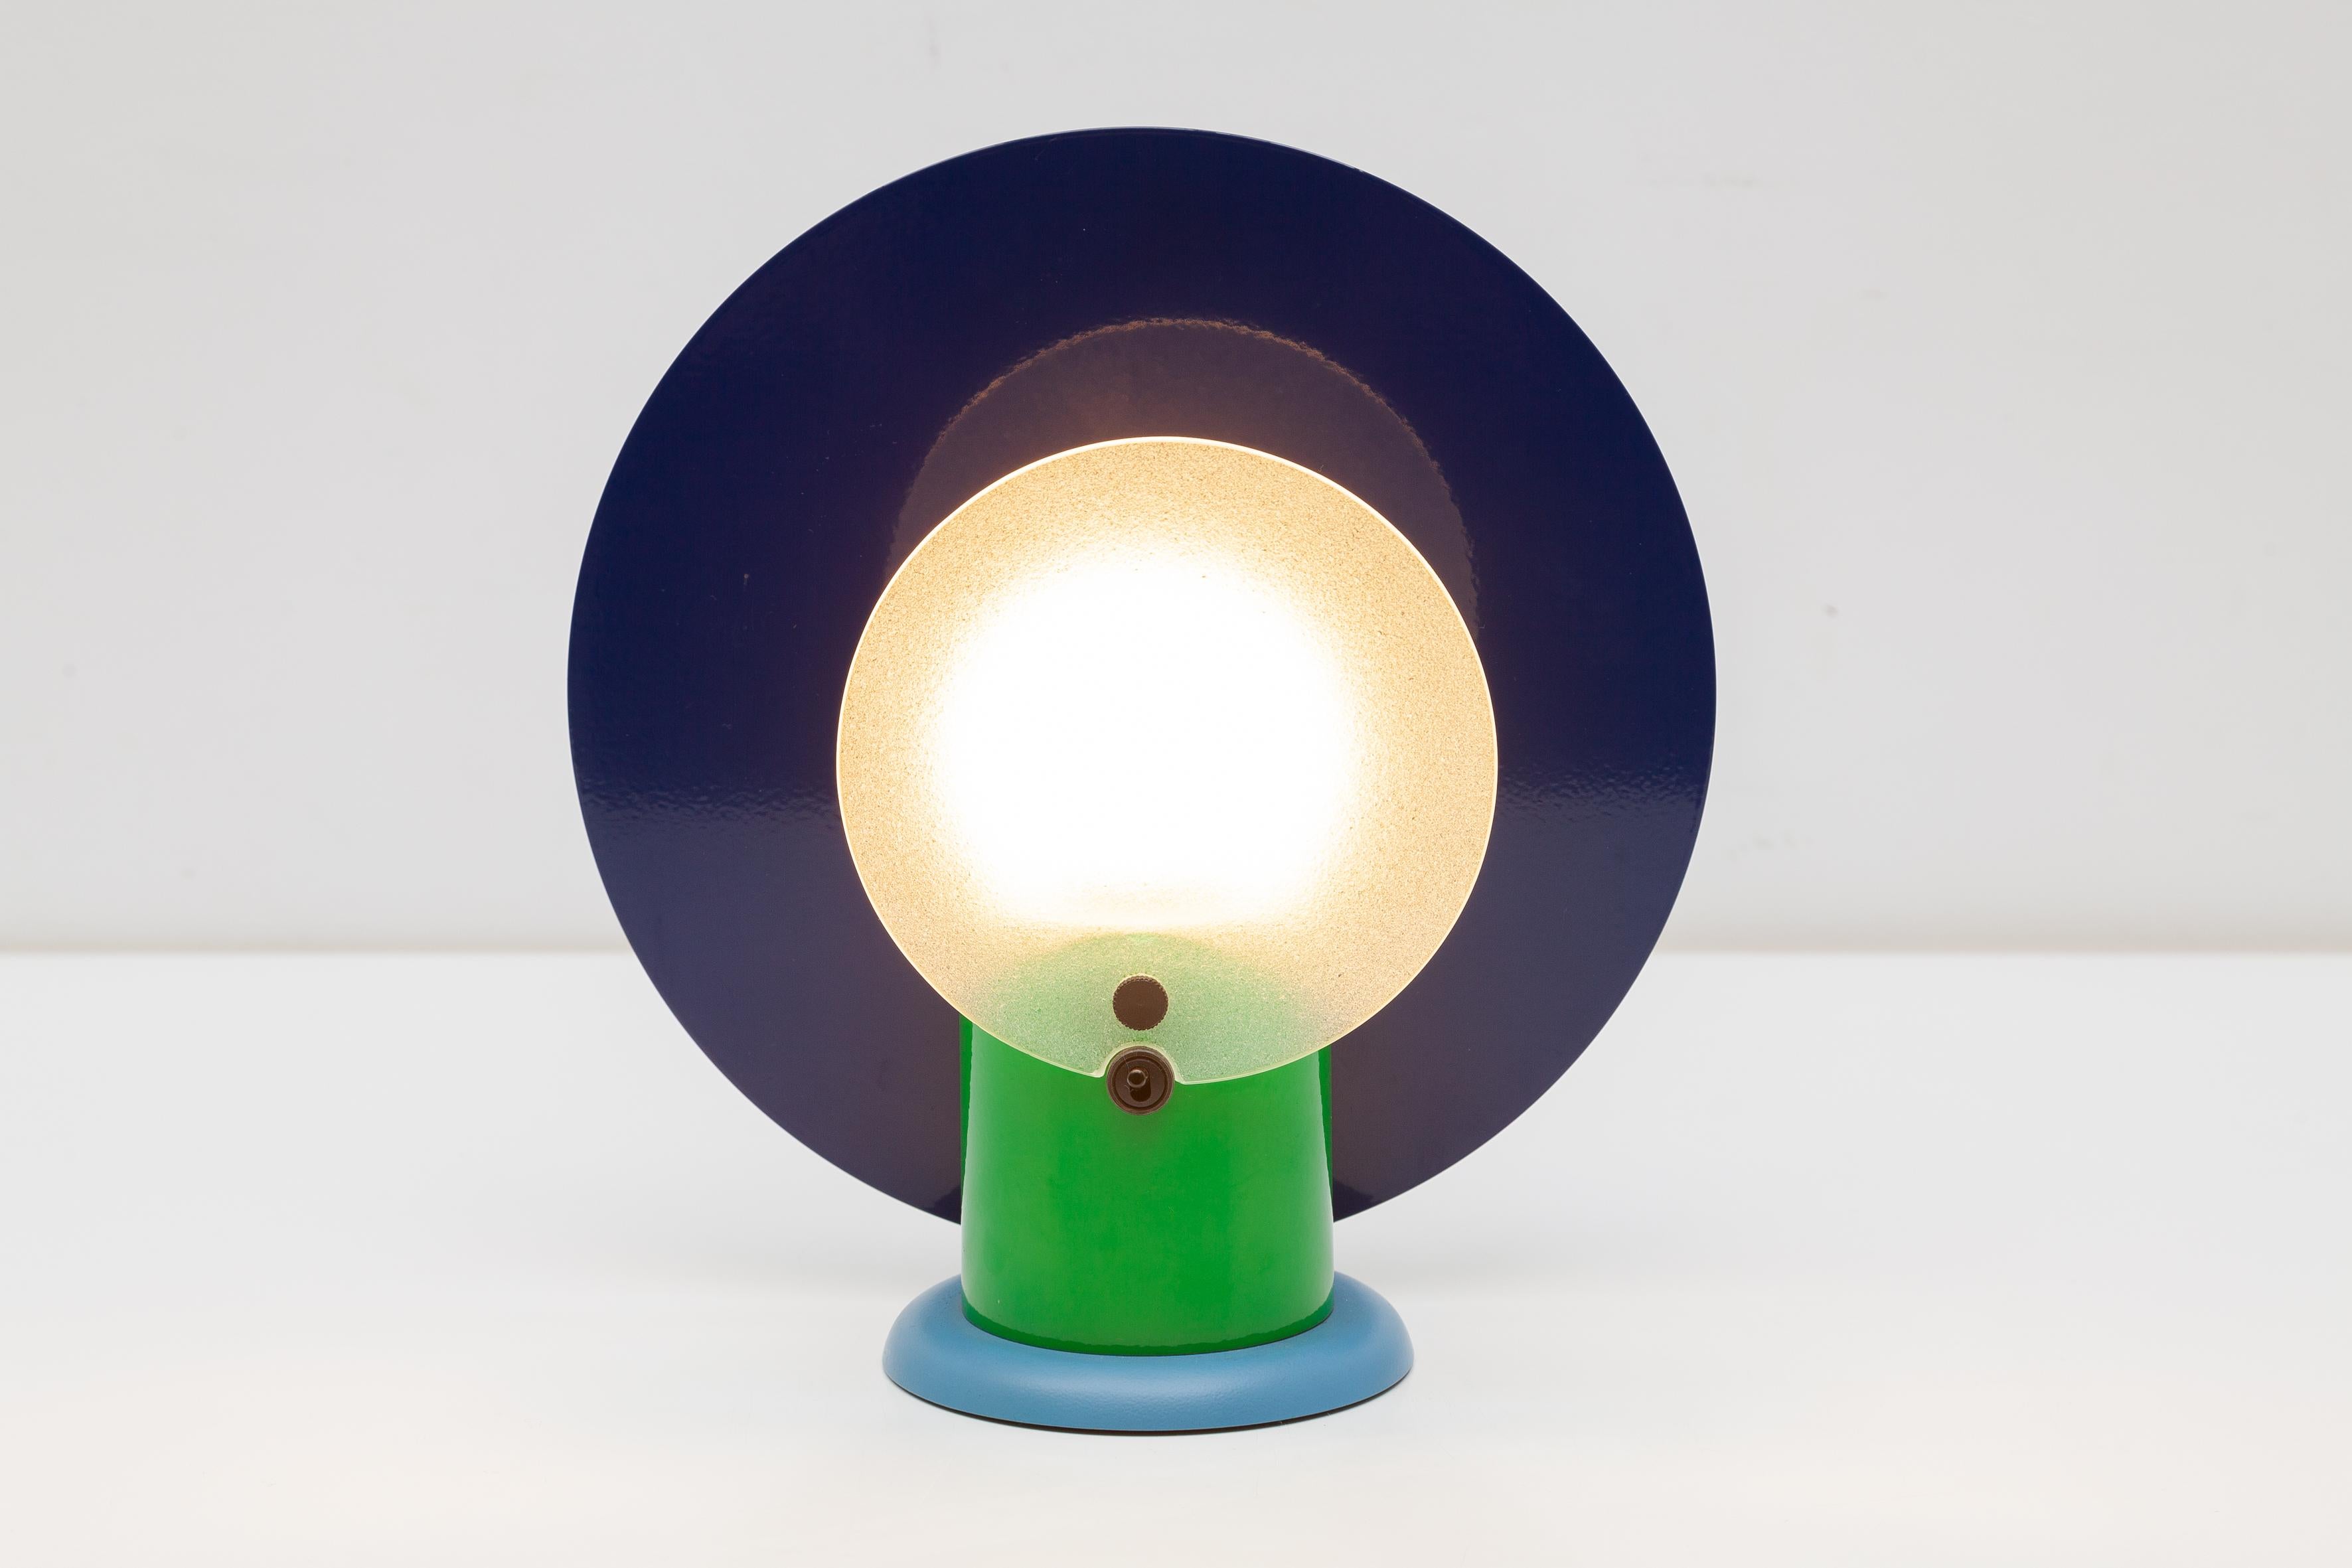 Lampe de table vintage de Beiffeplast, Italie. Design/One audacieux des années 1980 avec métal émaillé bleu et vert et abat-jour en verre texturé. Ampoule caoutchoutée hérissée de pointes.Dimensions:27 x 25 x 12 cm.Parfait état.